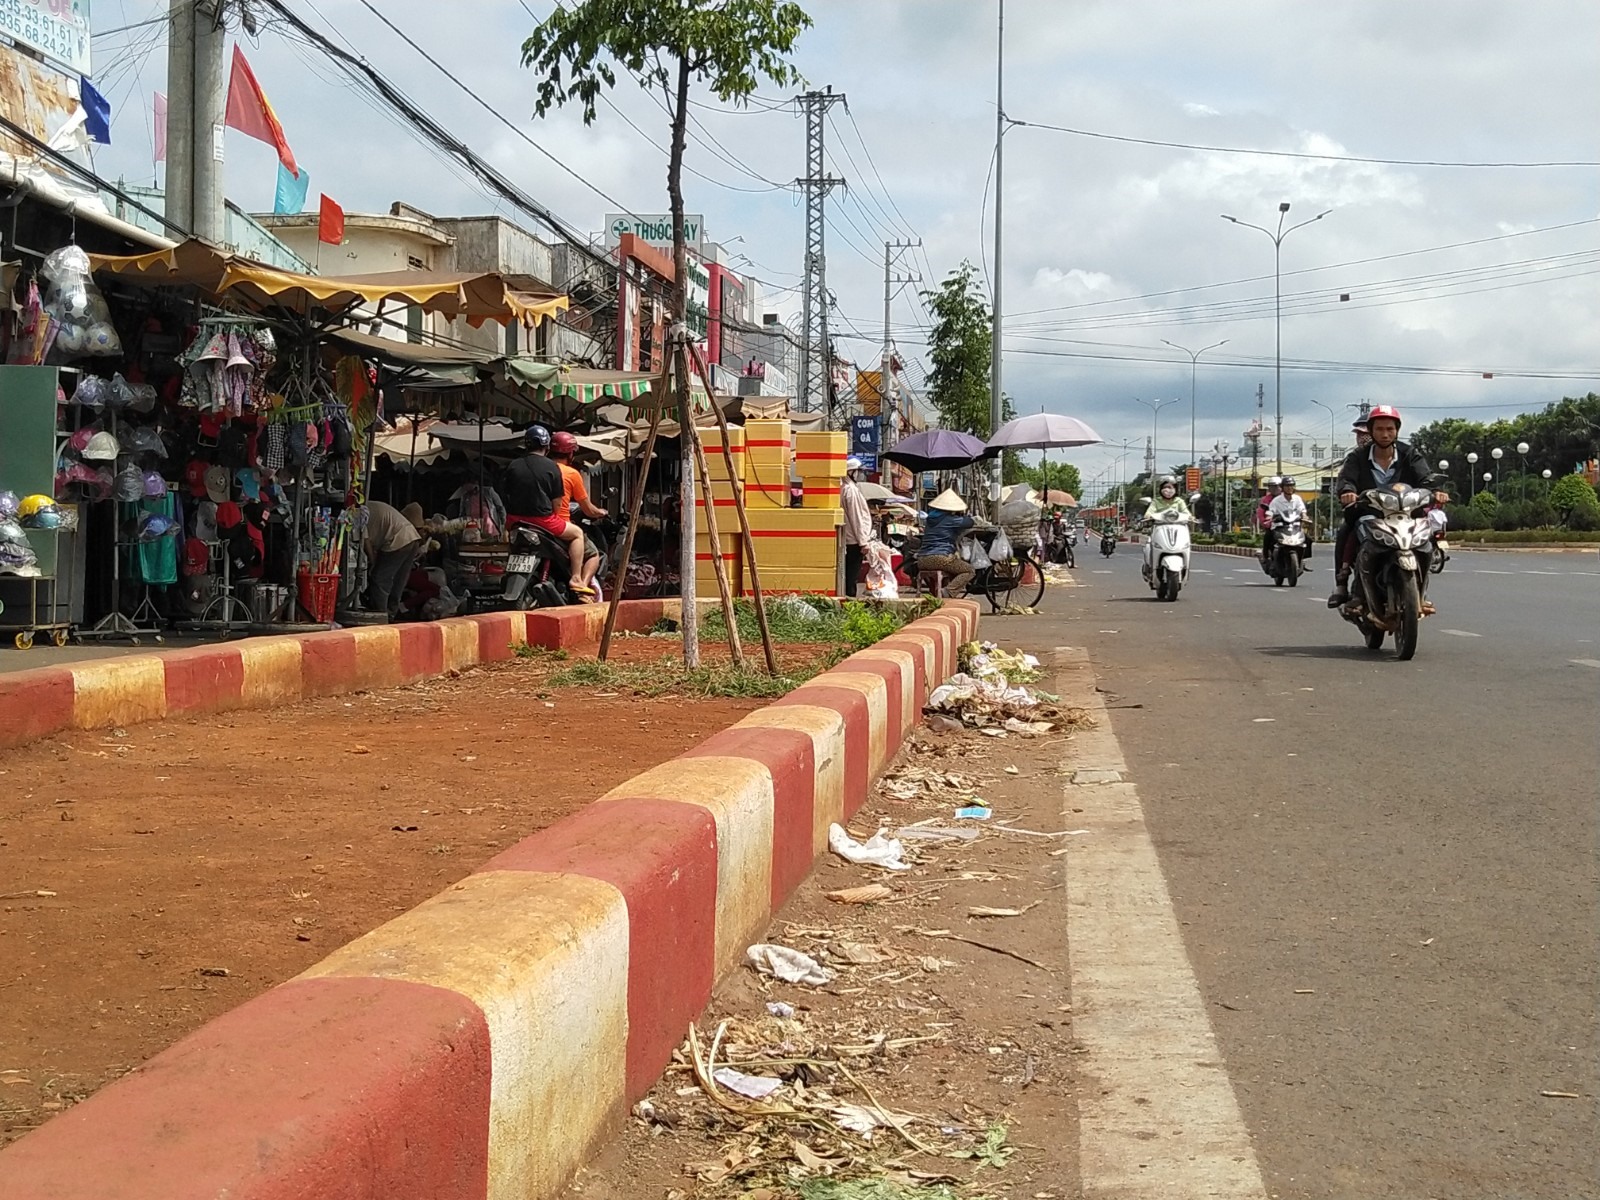 Sau đó, UBND huyện Chư Sê, Gia Lai đã tiến hành xây dựng rào chắn dọc đường quanh khu vực chợ nhằm hạn chế tai nạn xảy ra